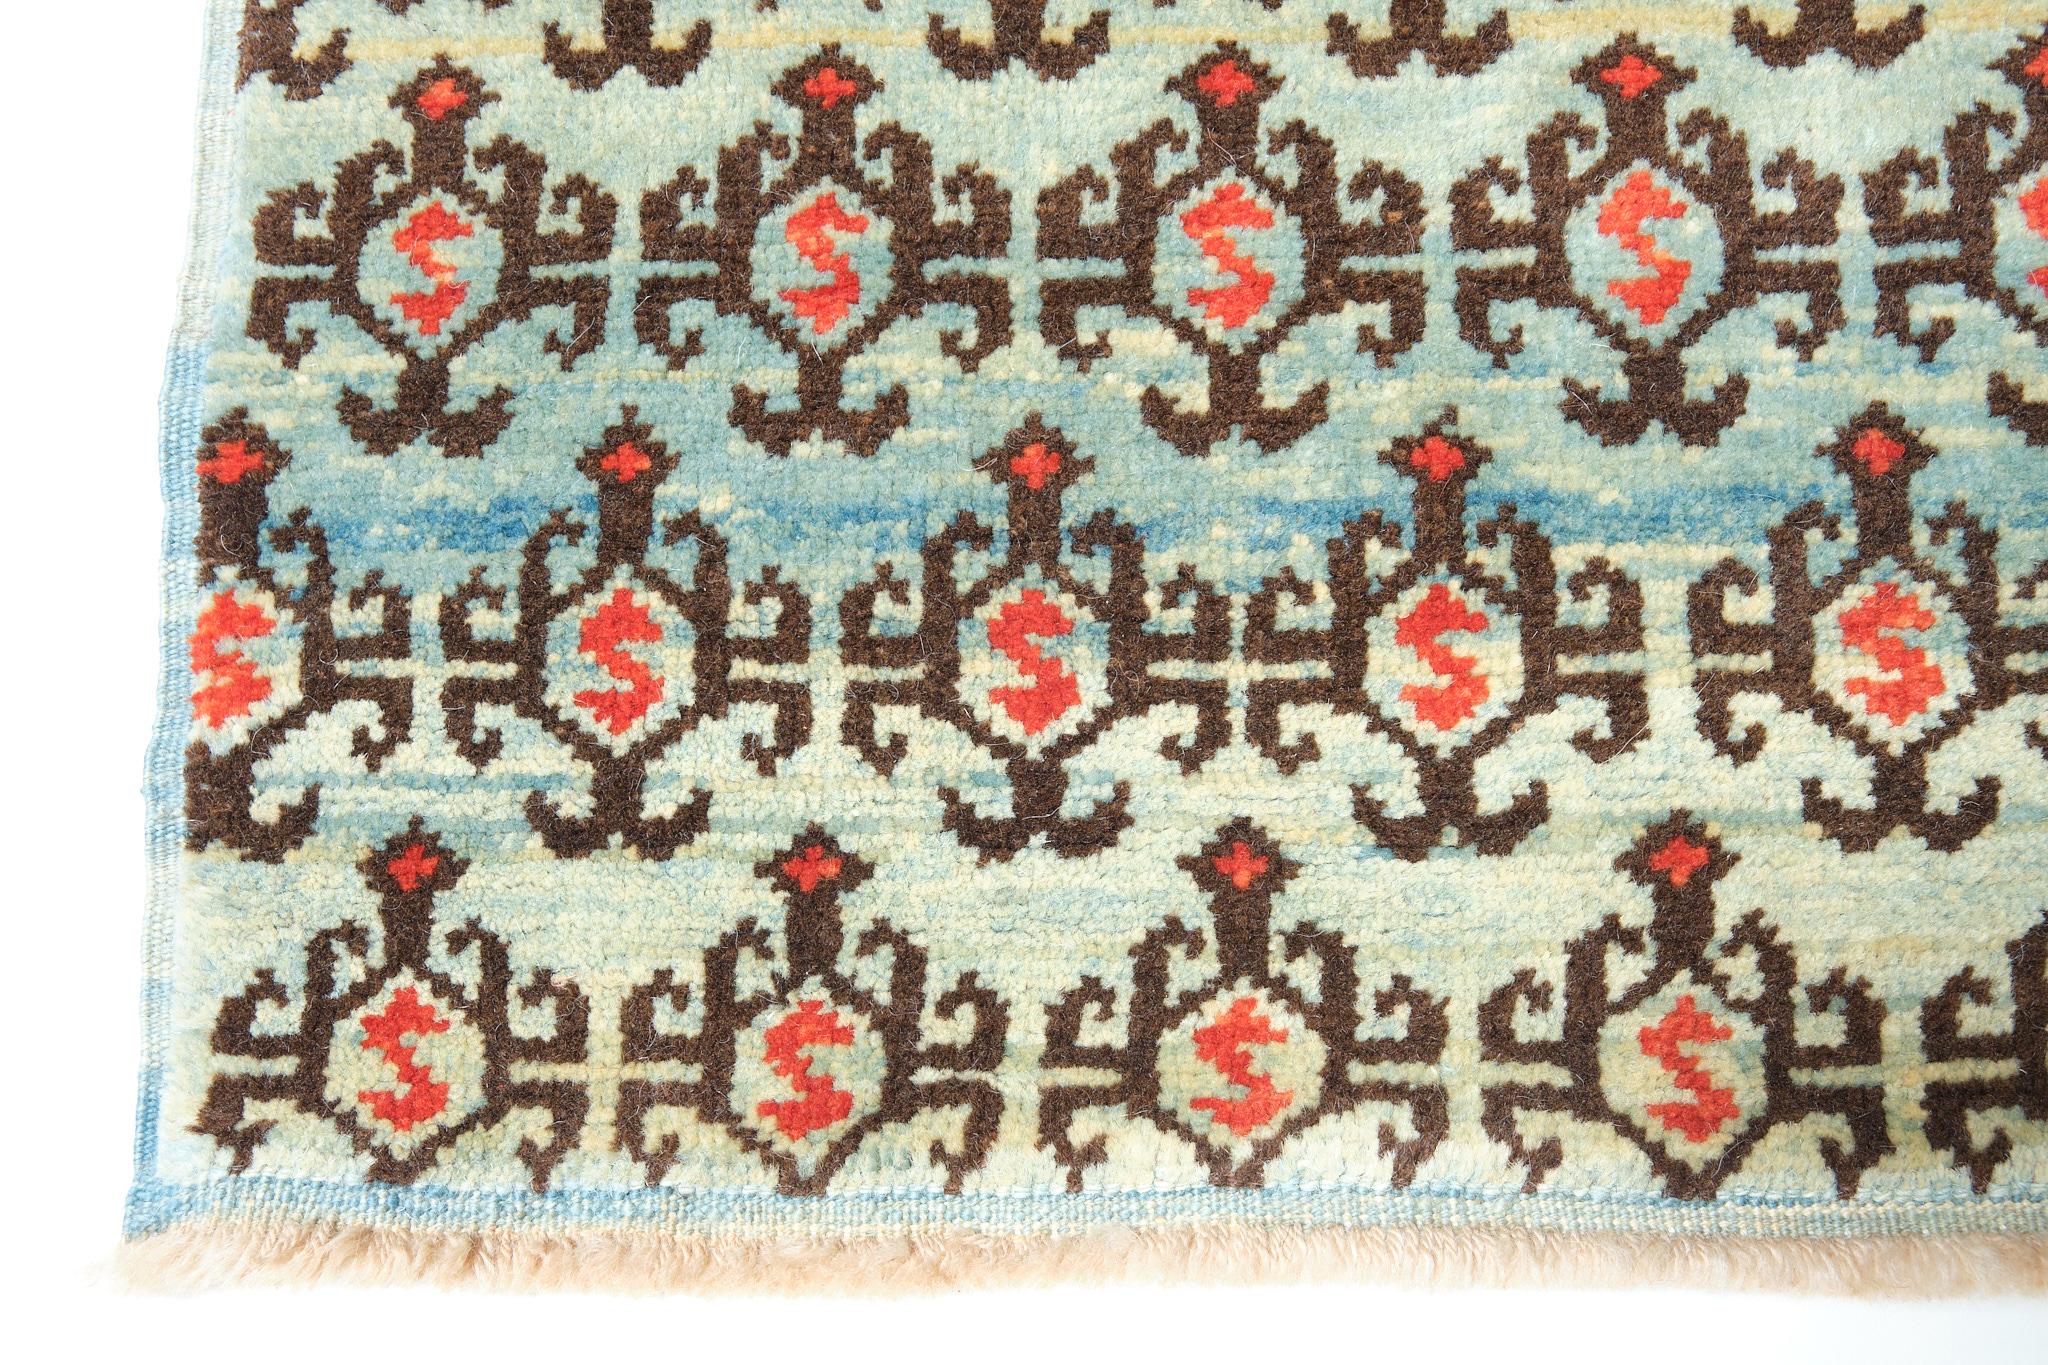 Die Quelle des Teppichs stammt aus dem Buch Orient Stars Collection, Anatolian Tribal Rugs 1050-1750, Michael Franses, Hali Publications Ltd, 2021 fig.27. Dieser Teppich aus dem 13. Jahrhundert stammt wahrscheinlich aus der Region Konya,